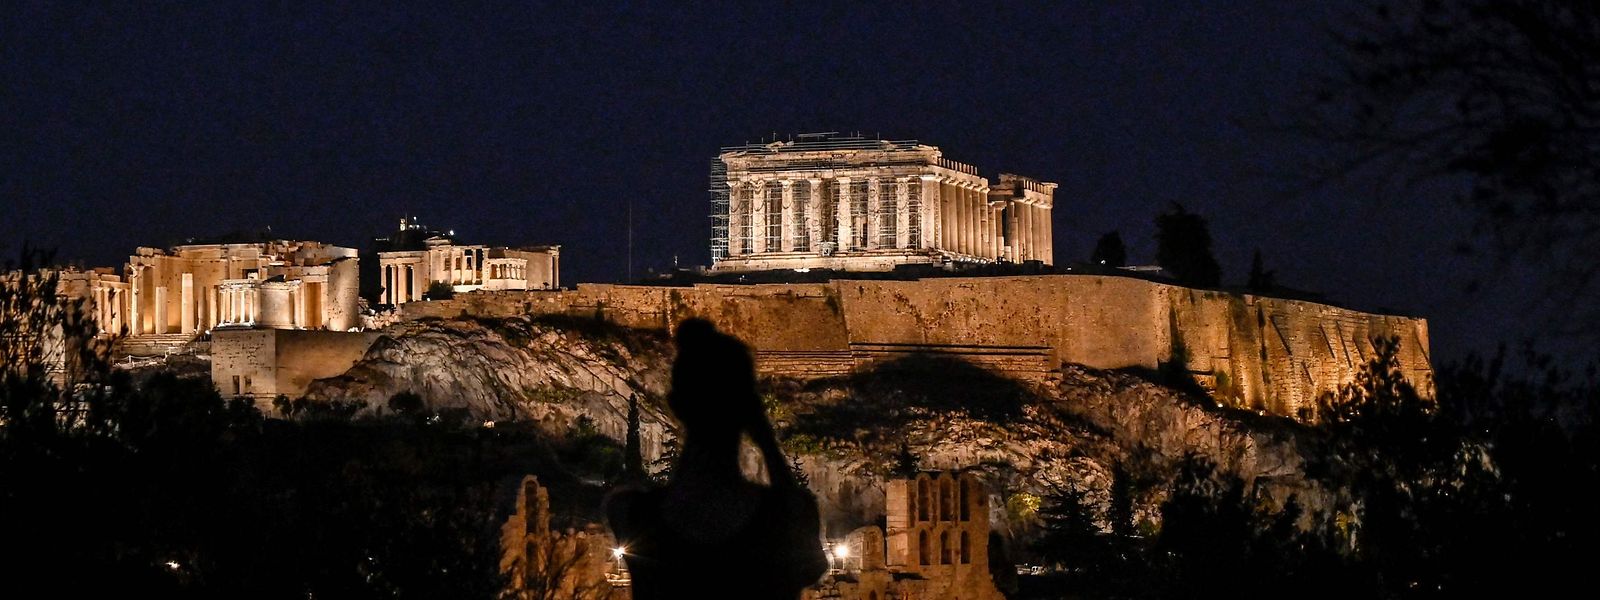 Im August erwartet Griechenland jede Woche eine Million ausländische Urlauber.